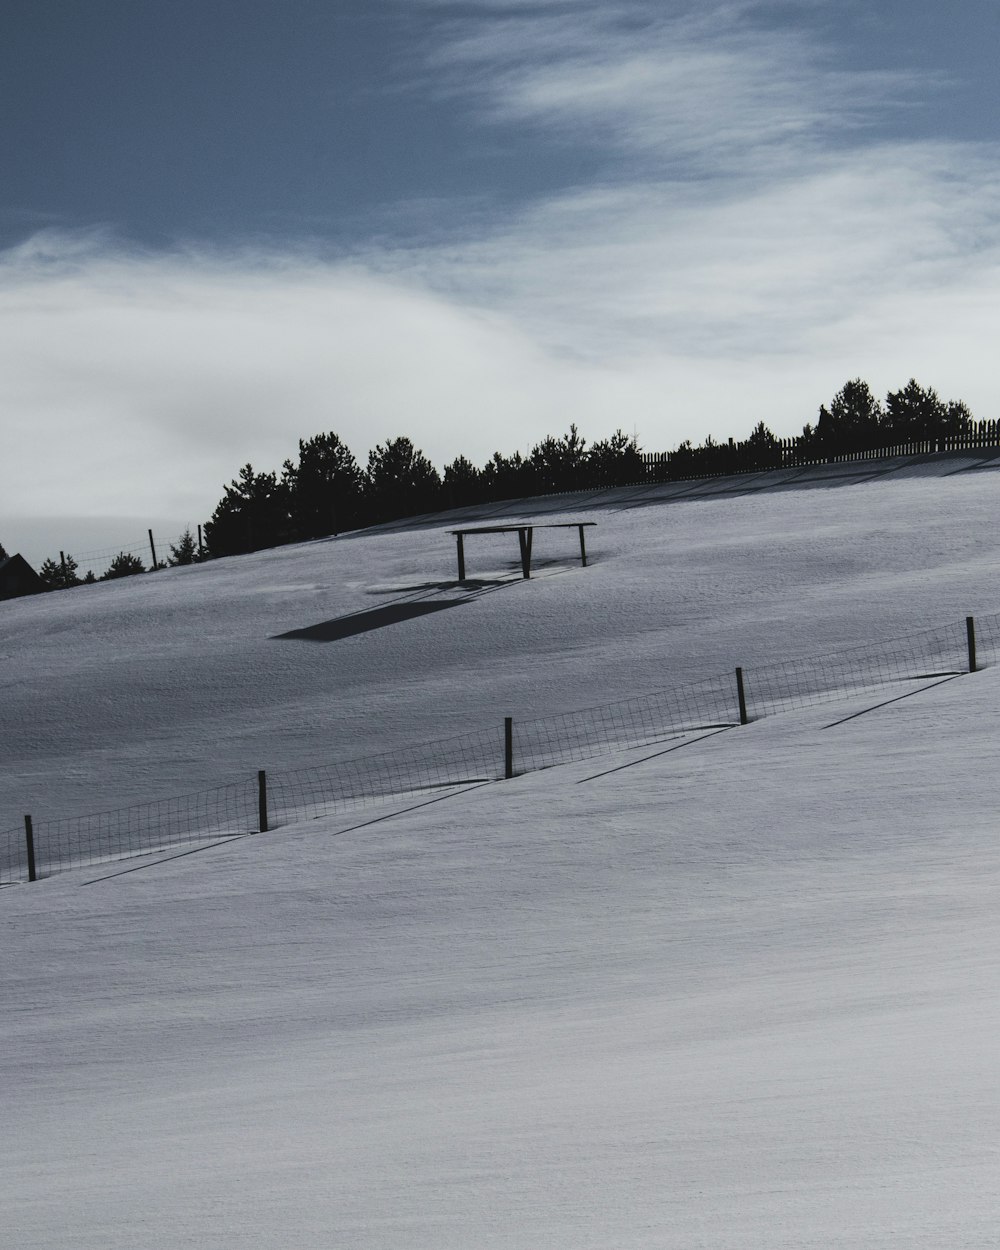 campo coberto de neve sob o céu azul durante o dia